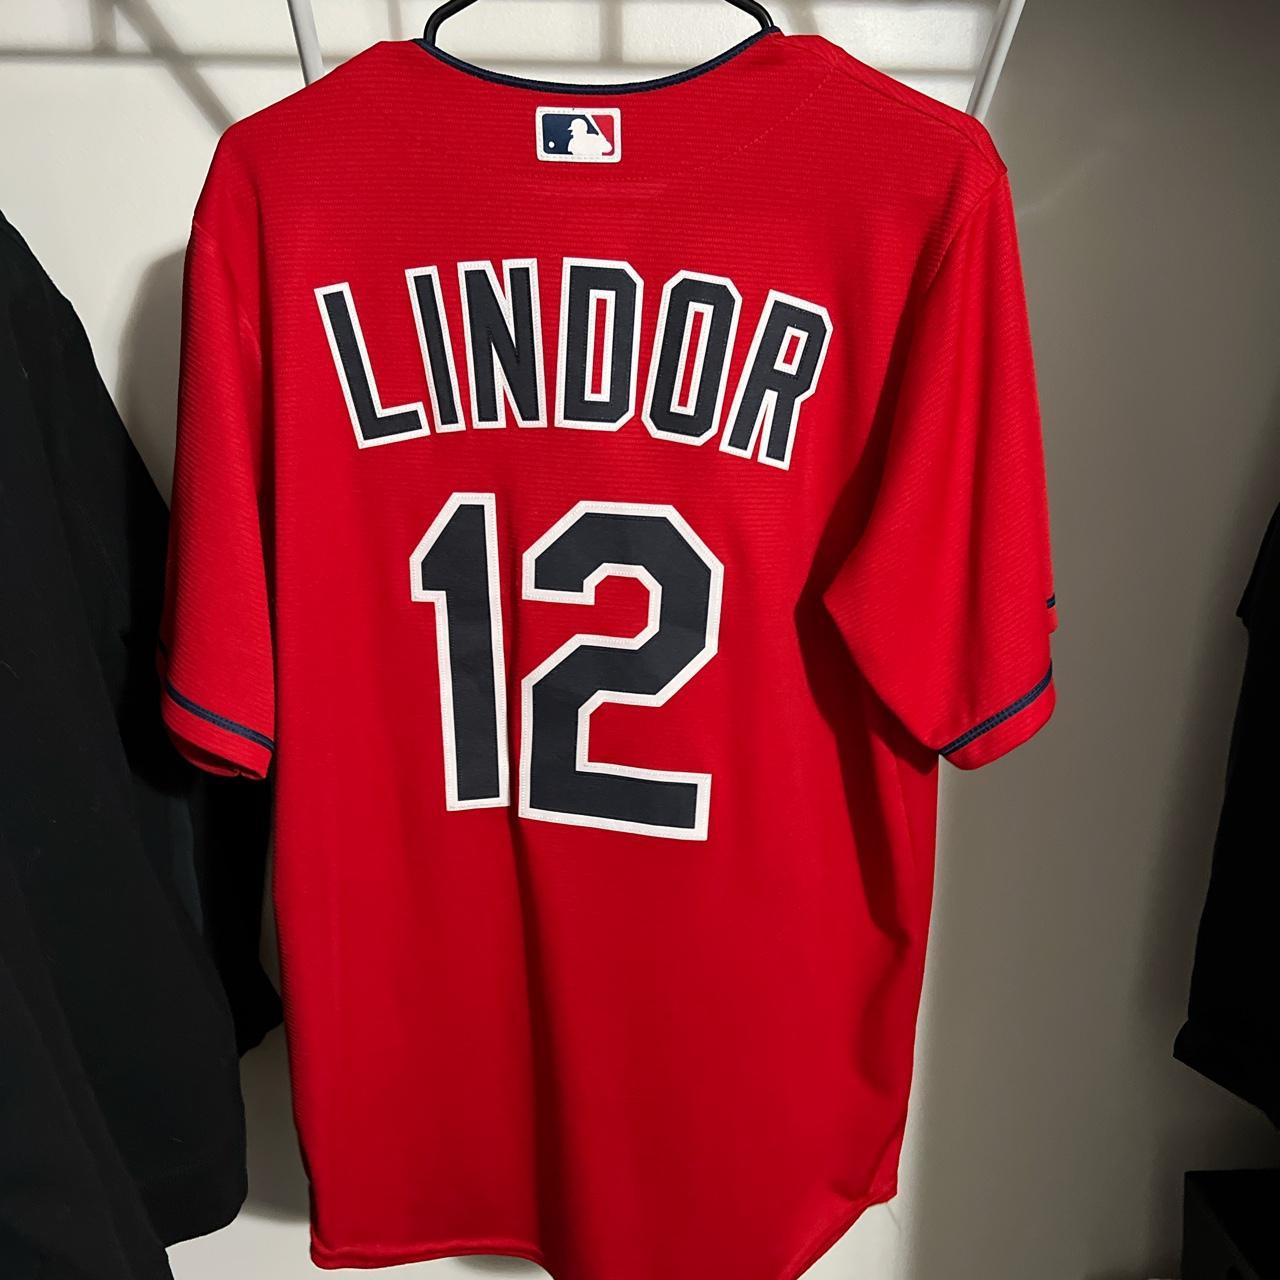 Francisco Lindor 12 Cleveland Indians Jersey - Depop